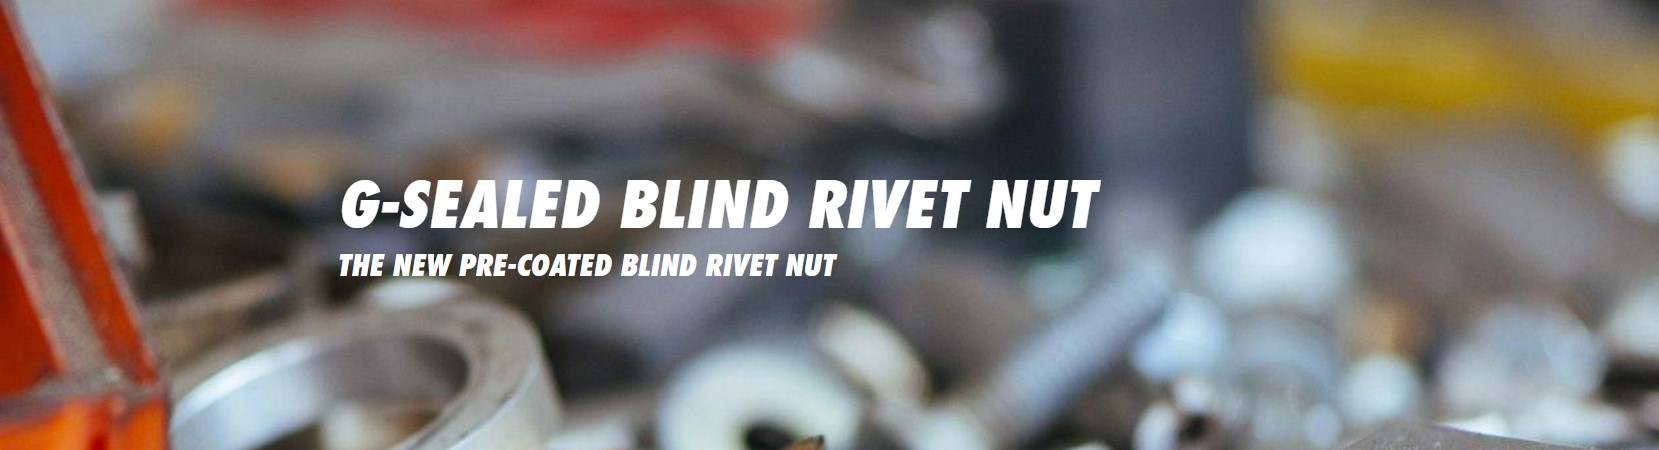 Image of G-SEALED BLIND RIVET NUT